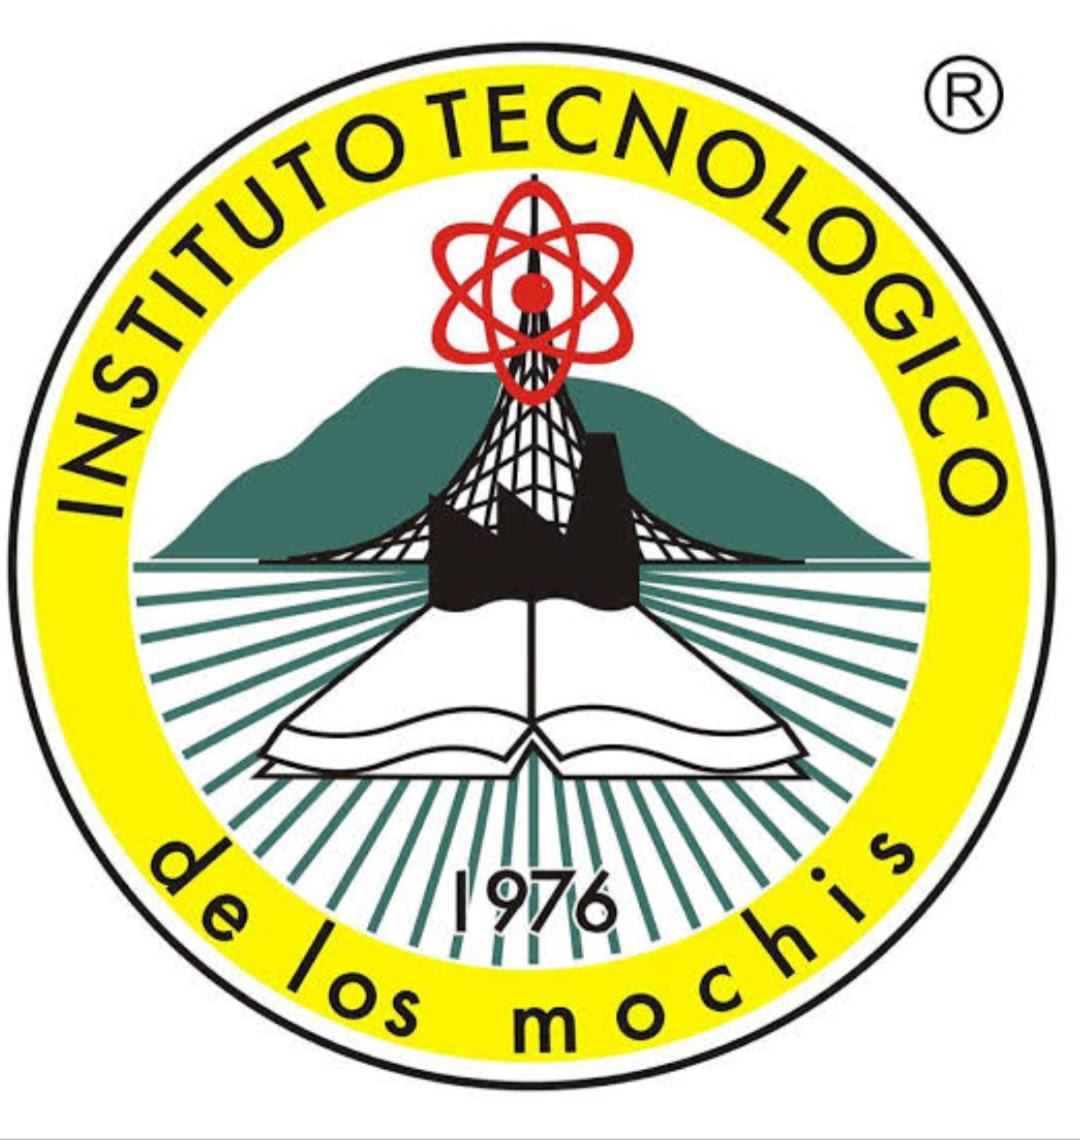 Instituto Tecnológico de los mochis